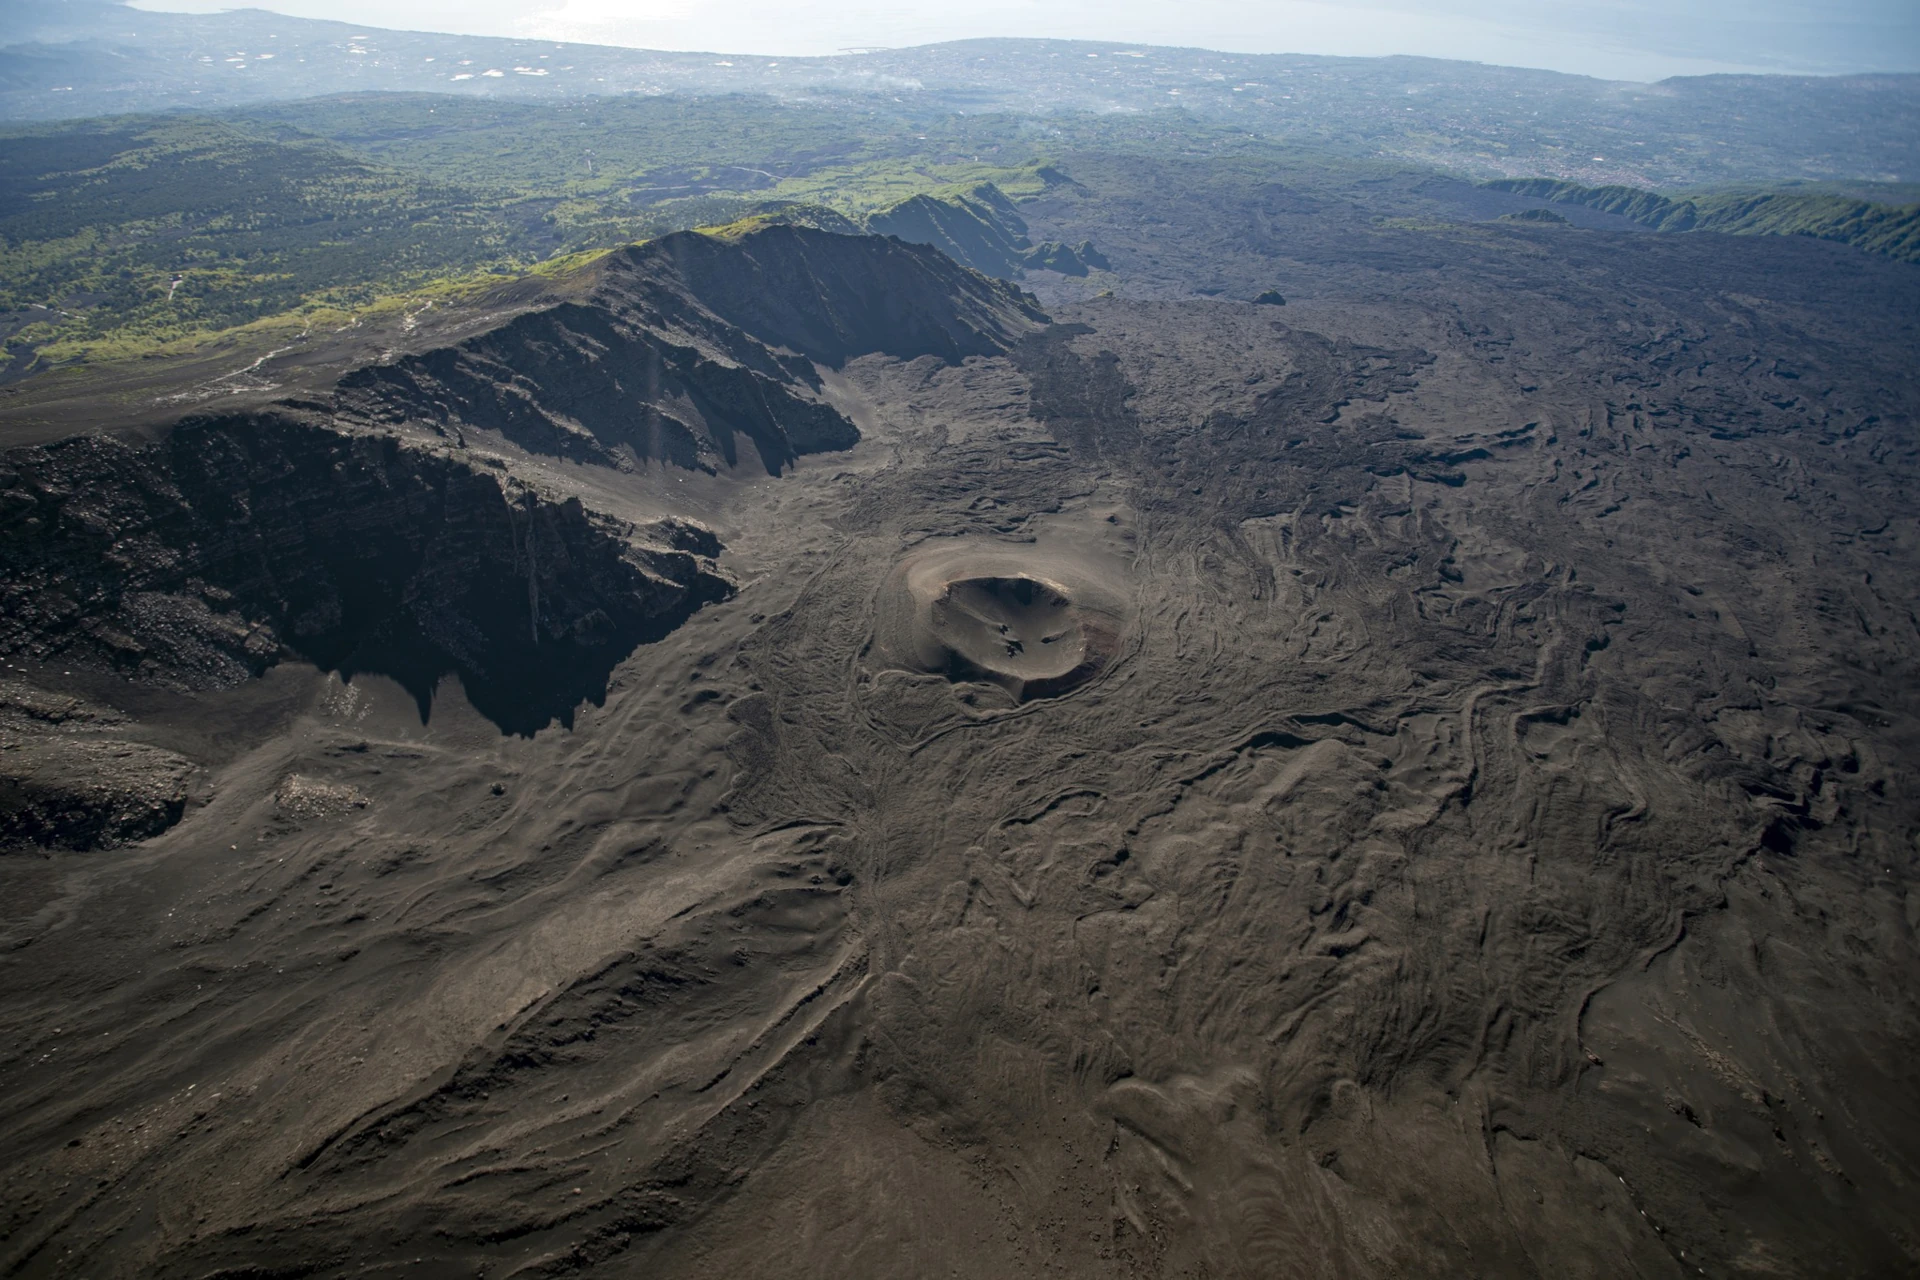 Découvre la Valle del Bove, un immense désert de lave, lors de notre tour Etna 3000 !